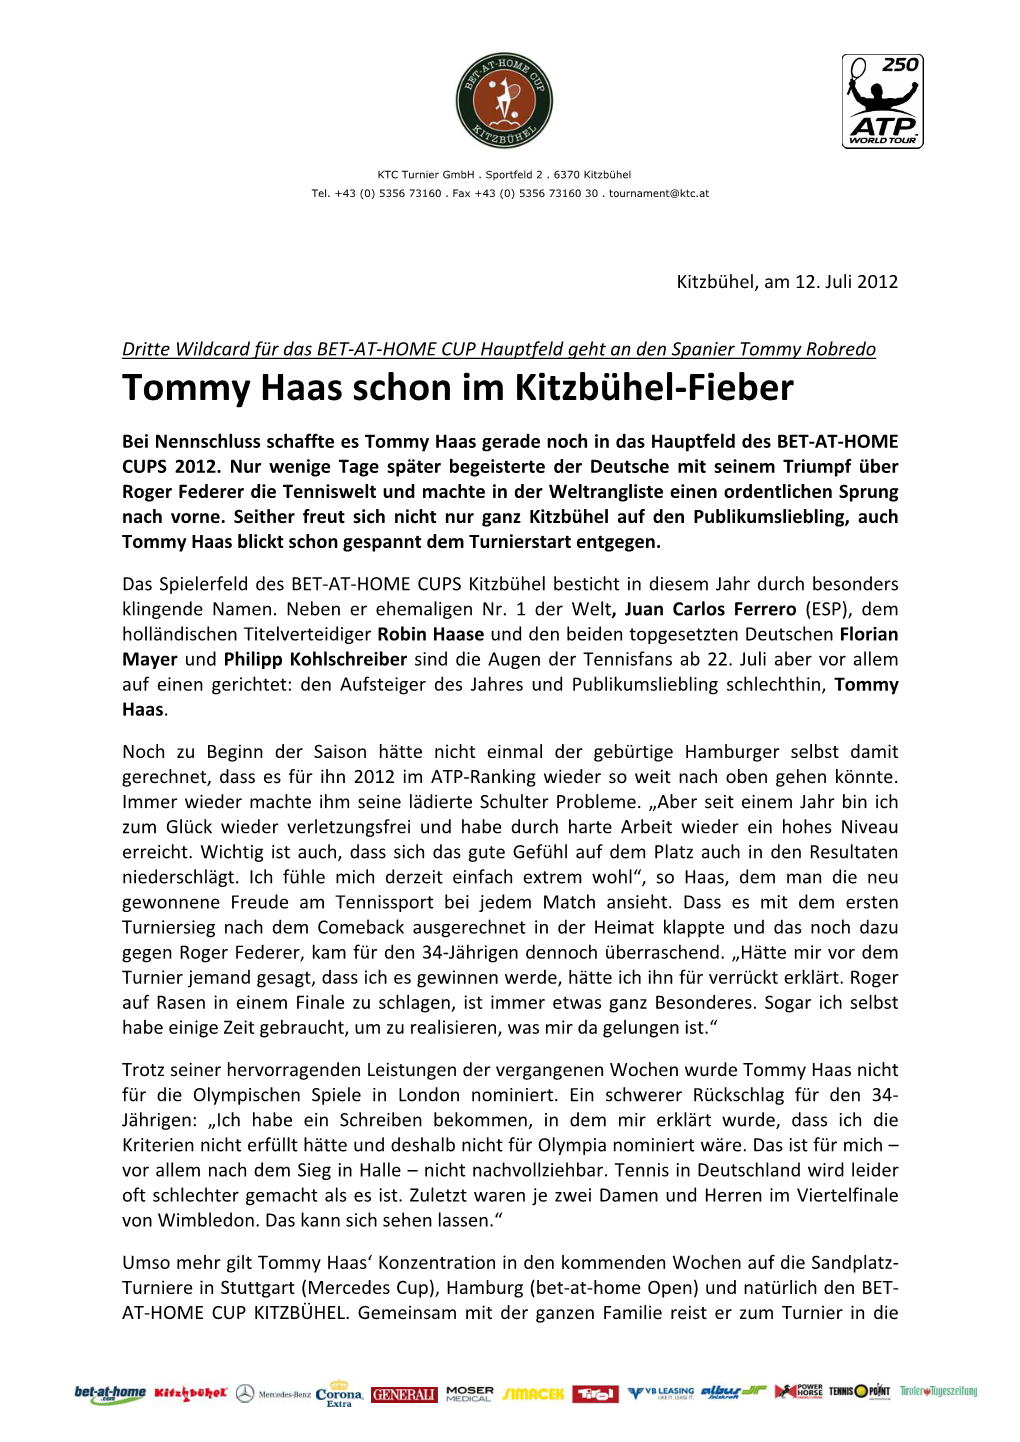 Tommy Haas Schon Im Kitzbühel-Fieber